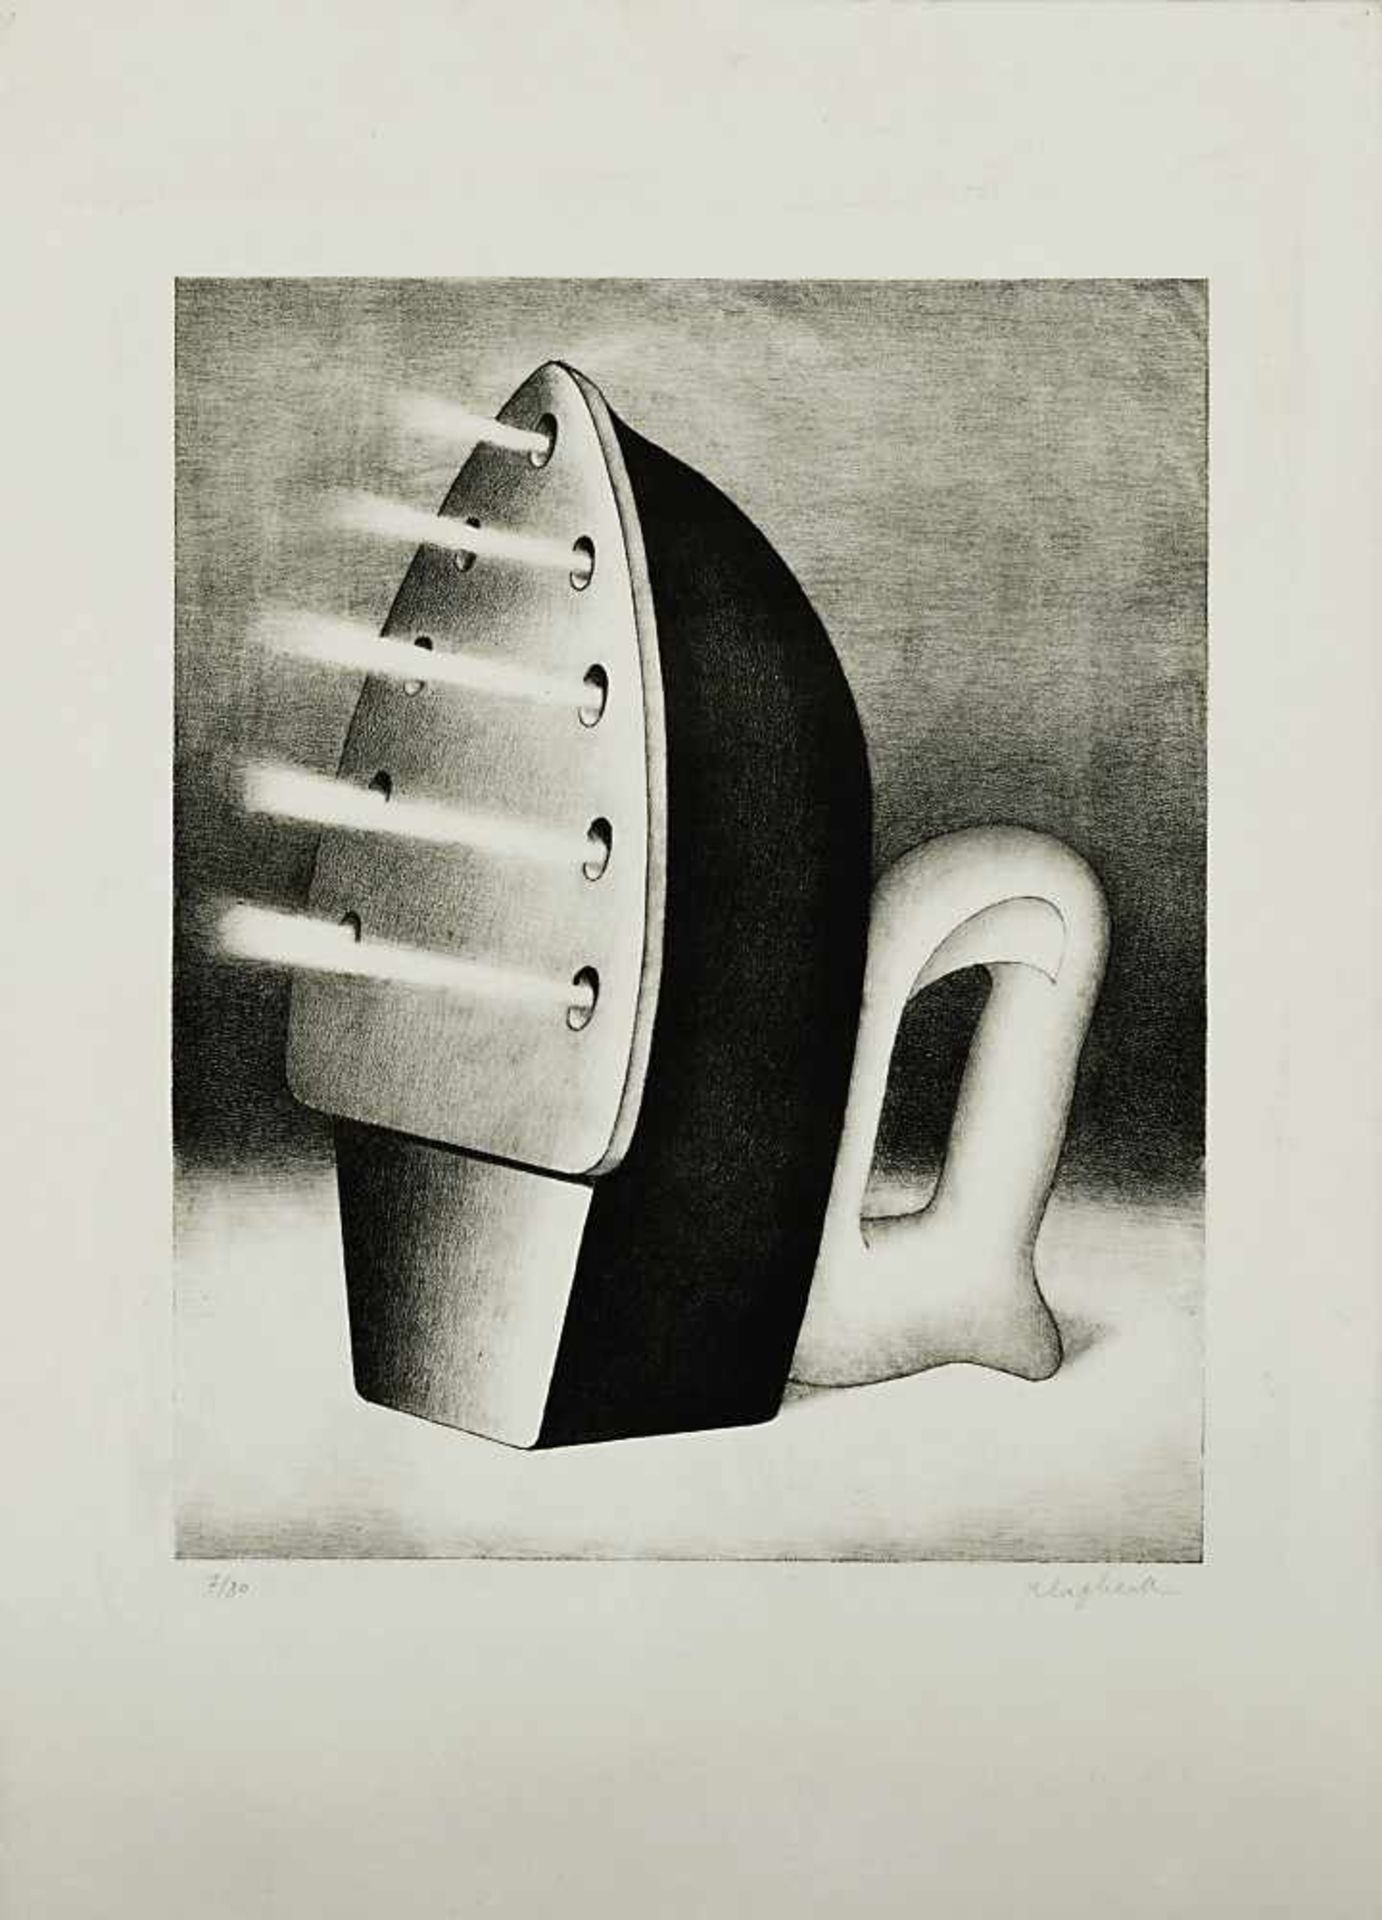 Klapheck, Konradgeb. 1935 DüsseldorfDie Schwiegermutter (Dampfbügeleisen)Lithographie Blatt: 69,5